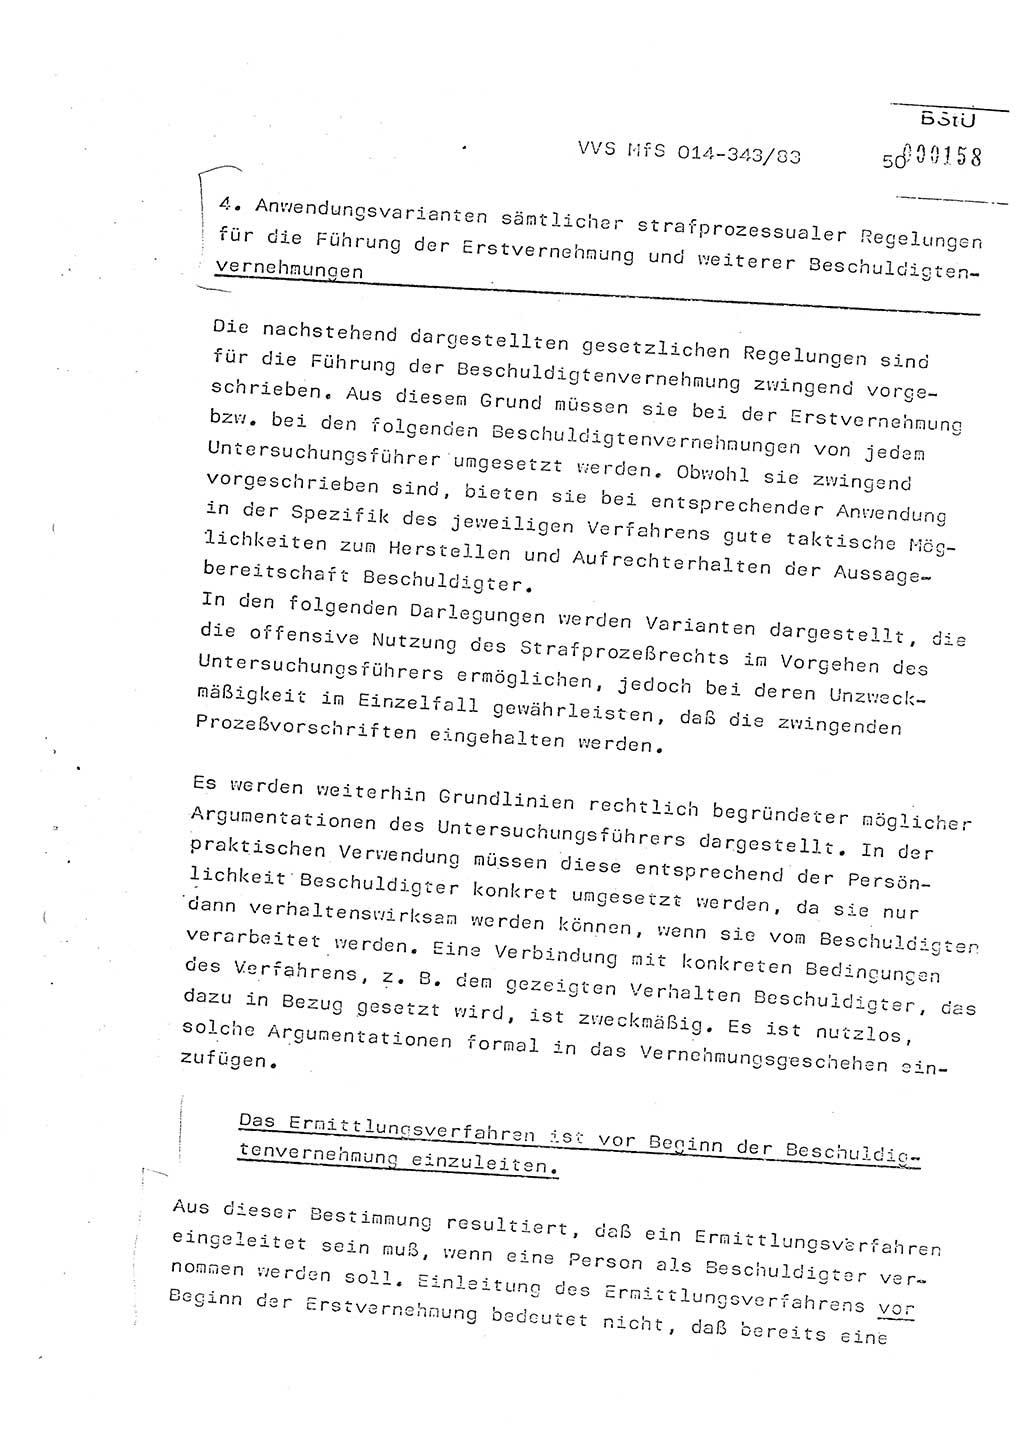 Lektion Ministerium für Staatssicherheit (MfS) [Deutsche Demokratische Republik (DDR)], Hauptabteilung (HA) Ⅸ, Vertrauliche Verschlußsache (VVS) o014-343/83, Berlin 1983, Seite 50 (Lekt. MfS DDR HA Ⅸ VVS o014-343/83 1983, S. 50)